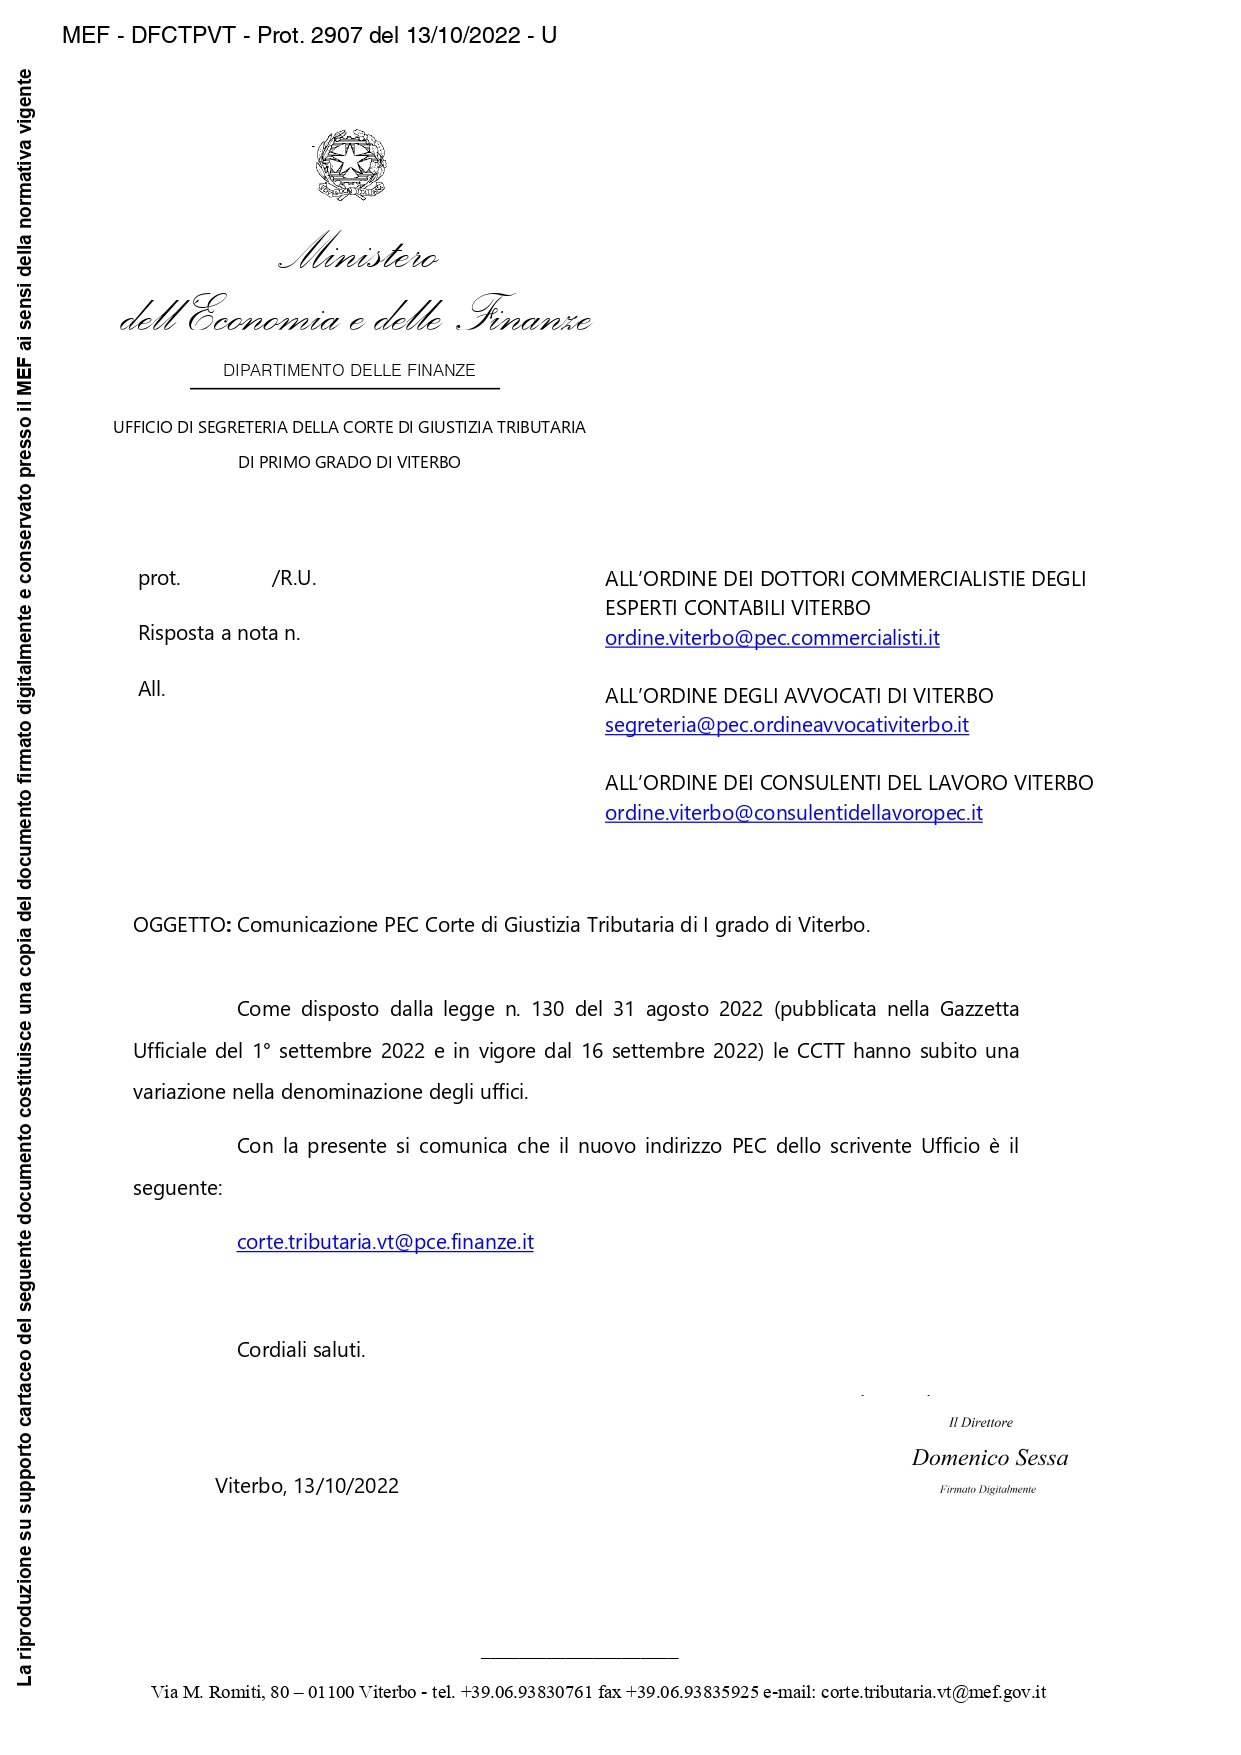 Comunicazione nuova PEC Corte di Giustizia Tributaria di I grado di Viterbo